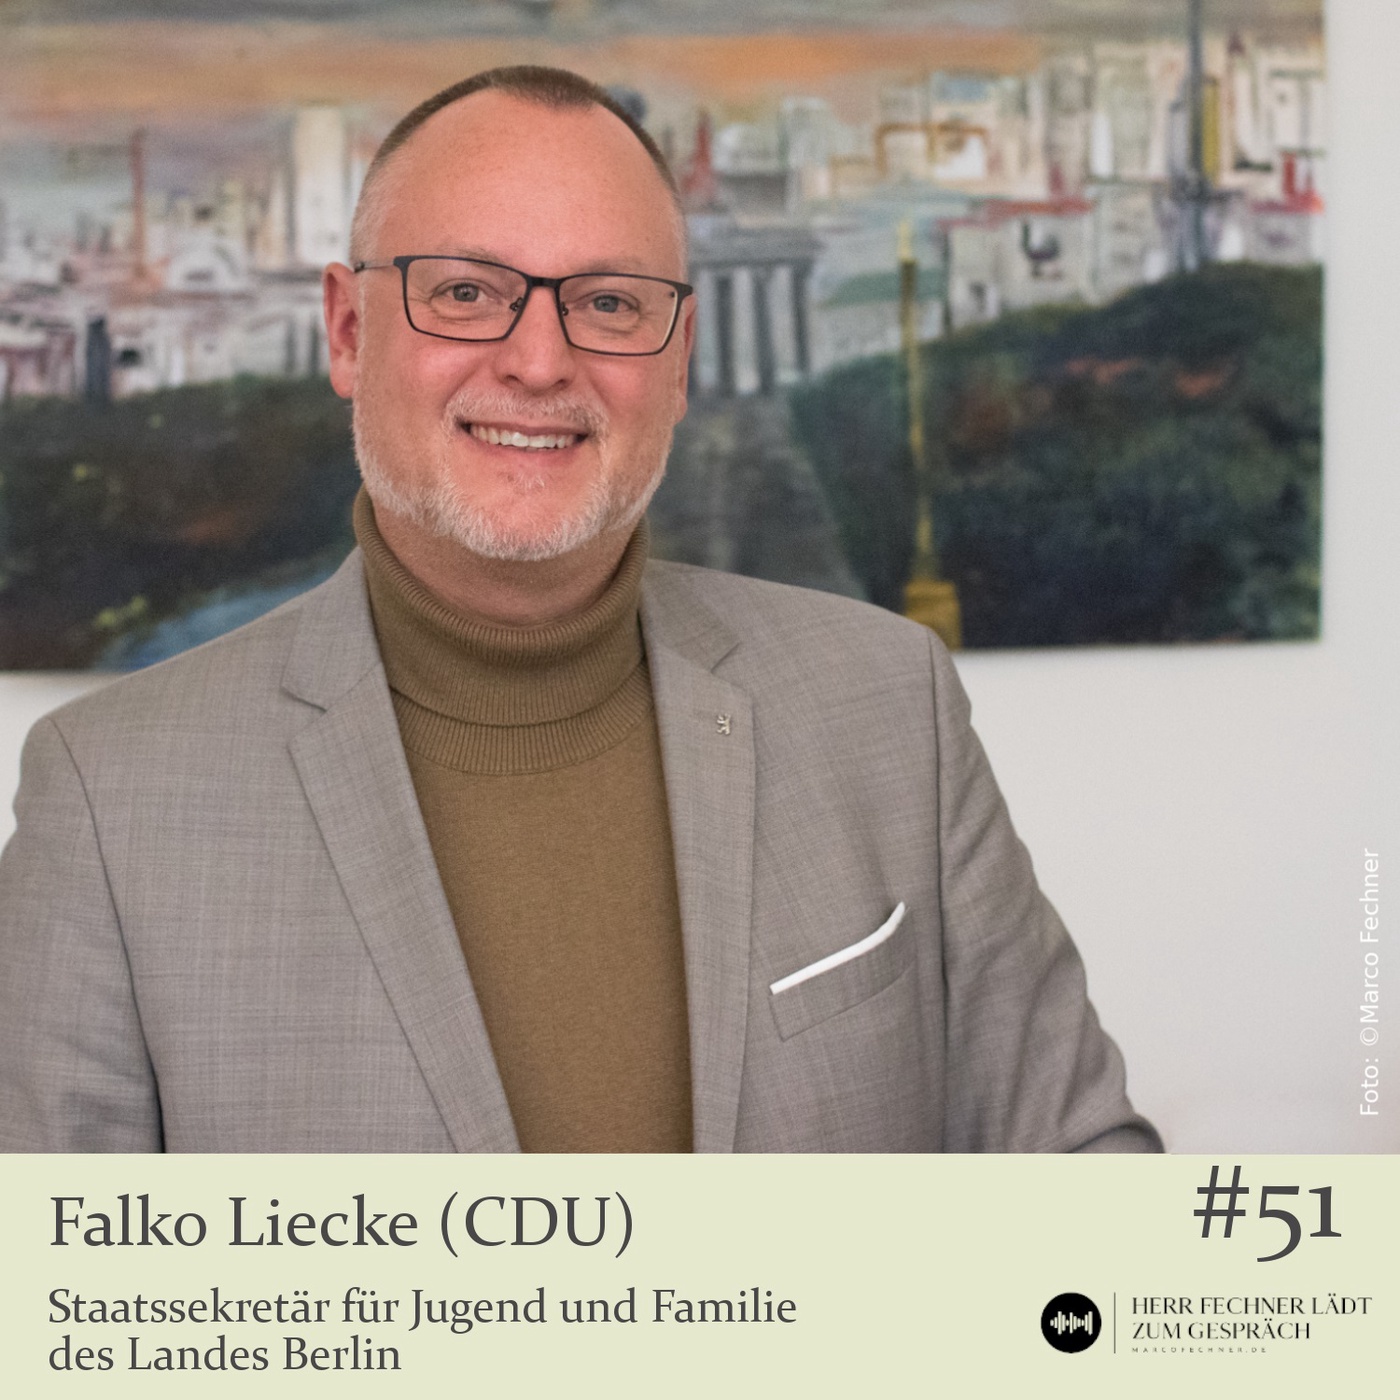 Falko Liecke (CDU), Staatssekretär für Jugend und Familie